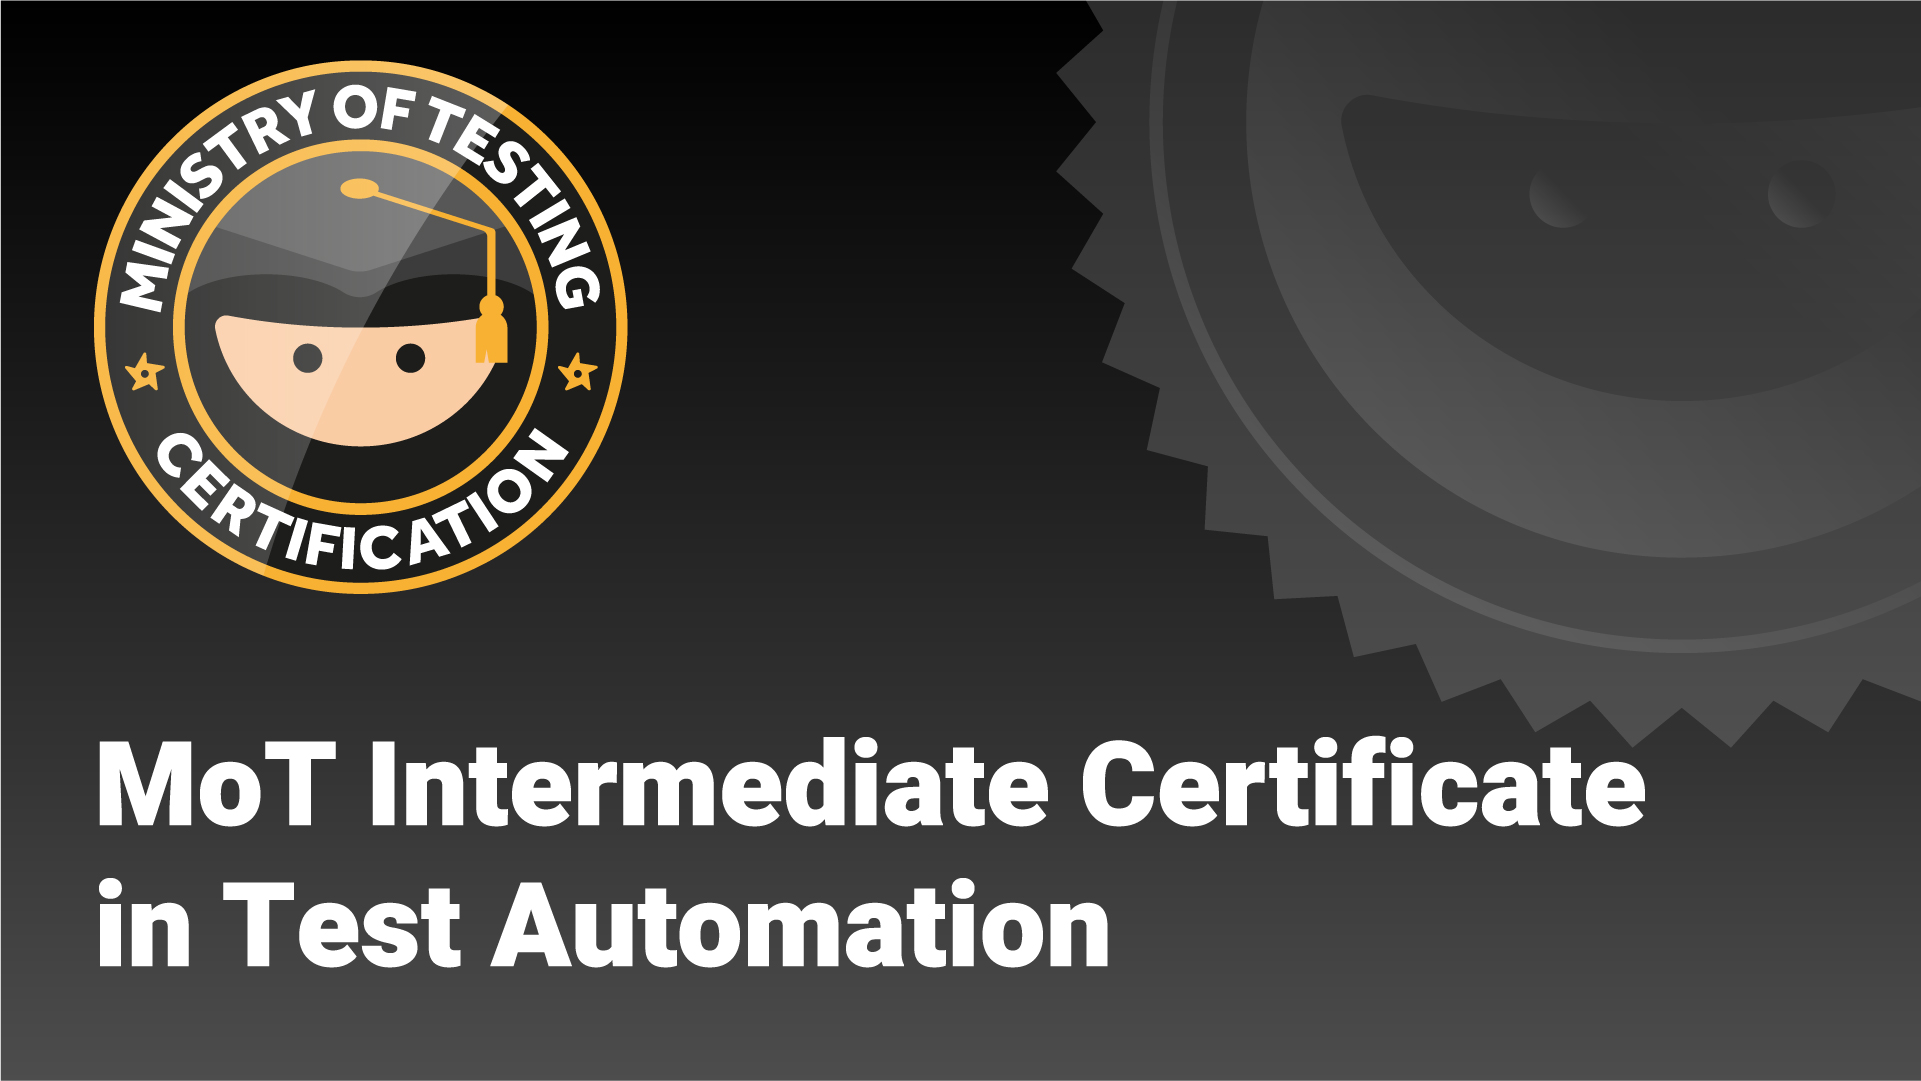 MoT Intermediate Certificate in Test Automation